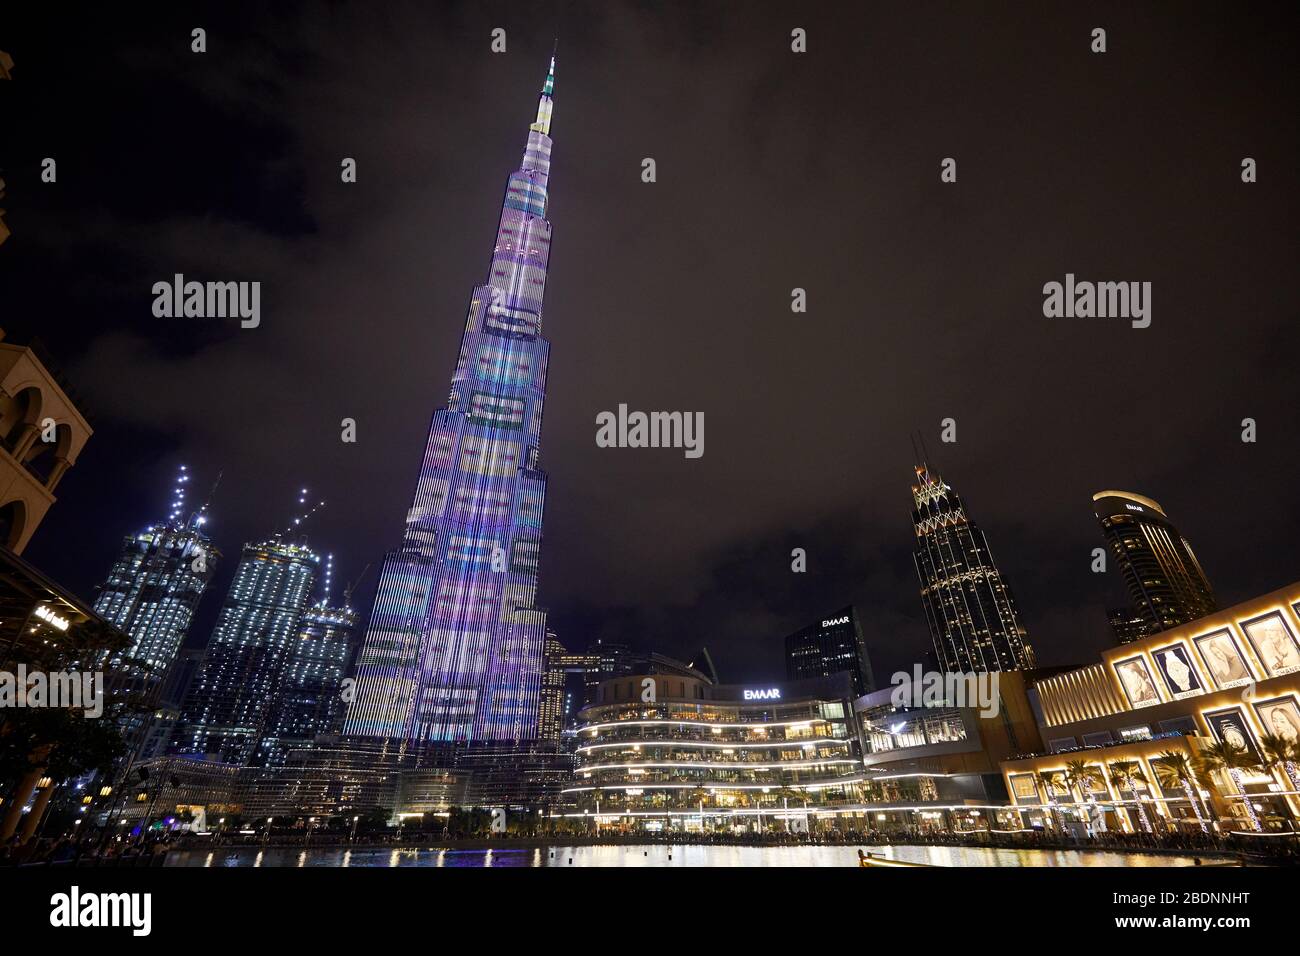 DUBAI, VEREINIGTE ARABISCHE EMIRATE - 21. NOVEMBER 2019: Burj Khalifa Wolkenkratzer mit Farben und Dubai Mall nachts beleuchtet Stockfoto